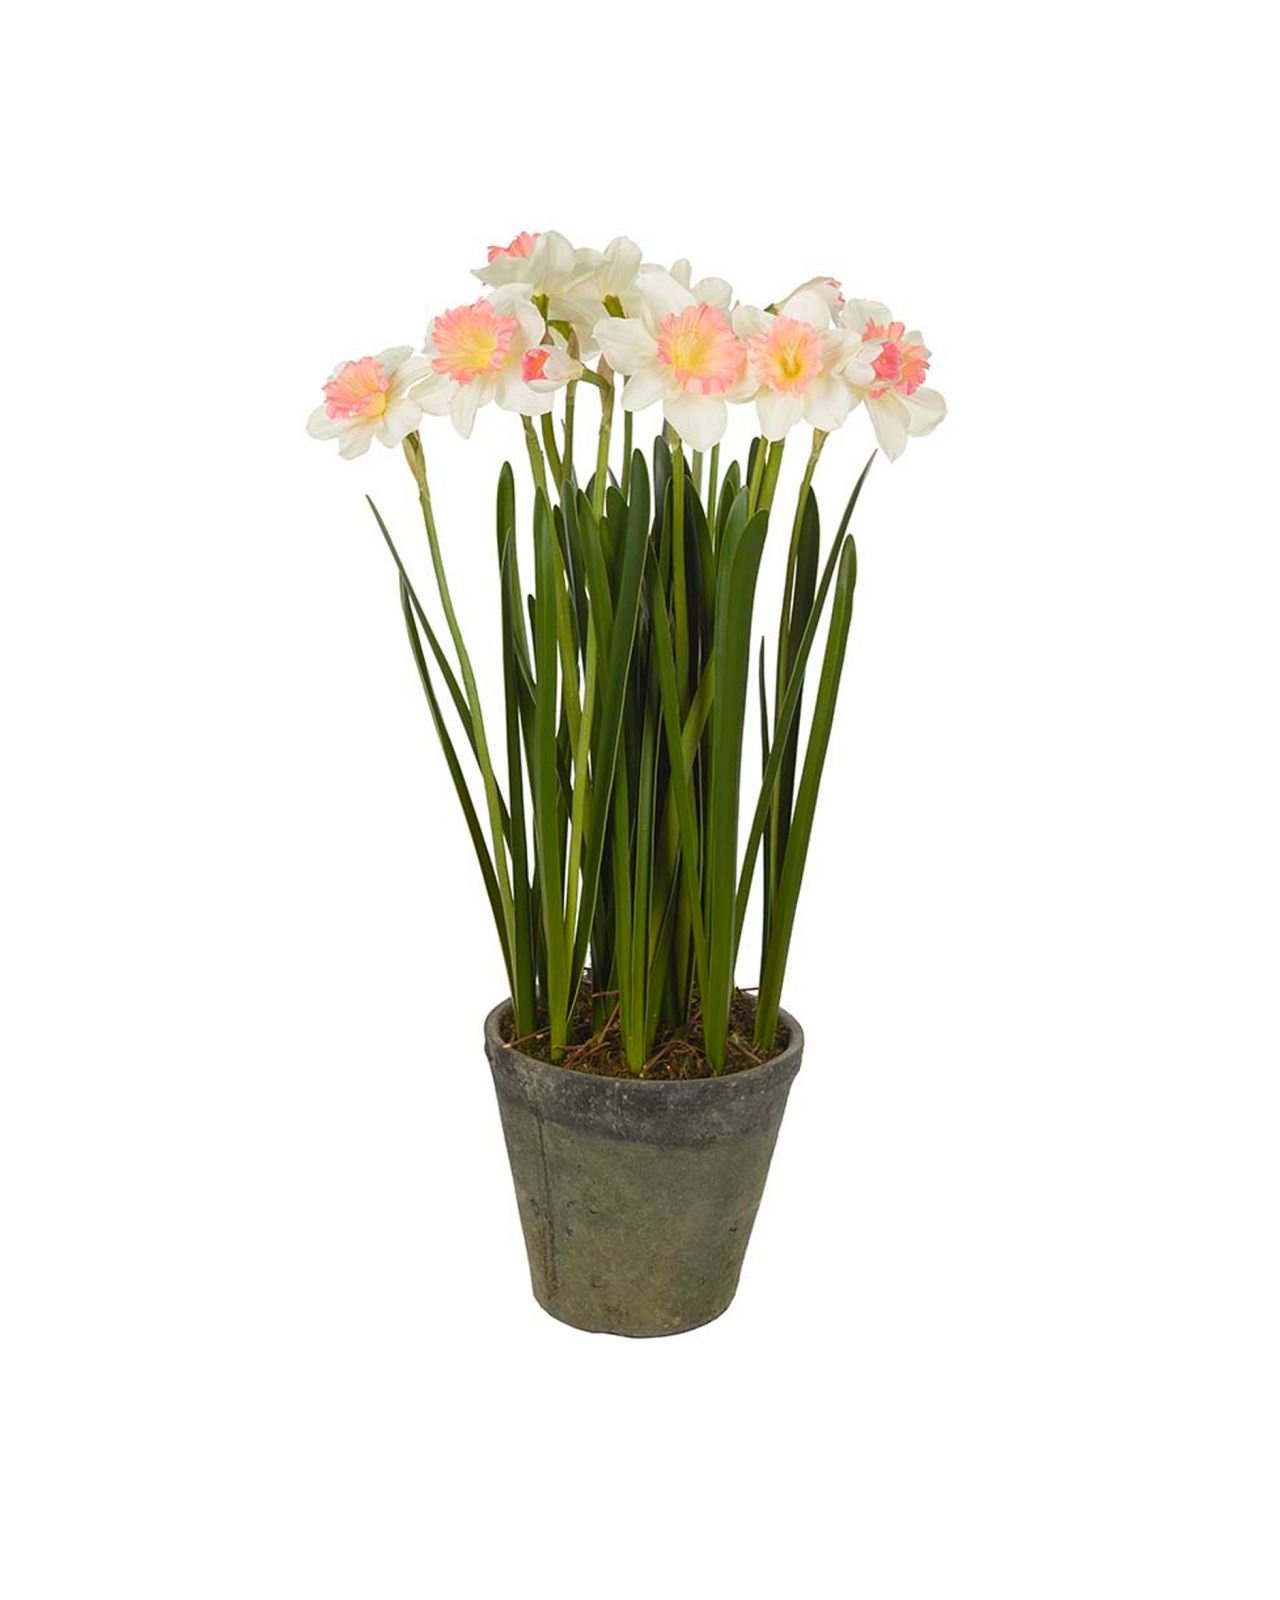 Narcis potplant wit/roze